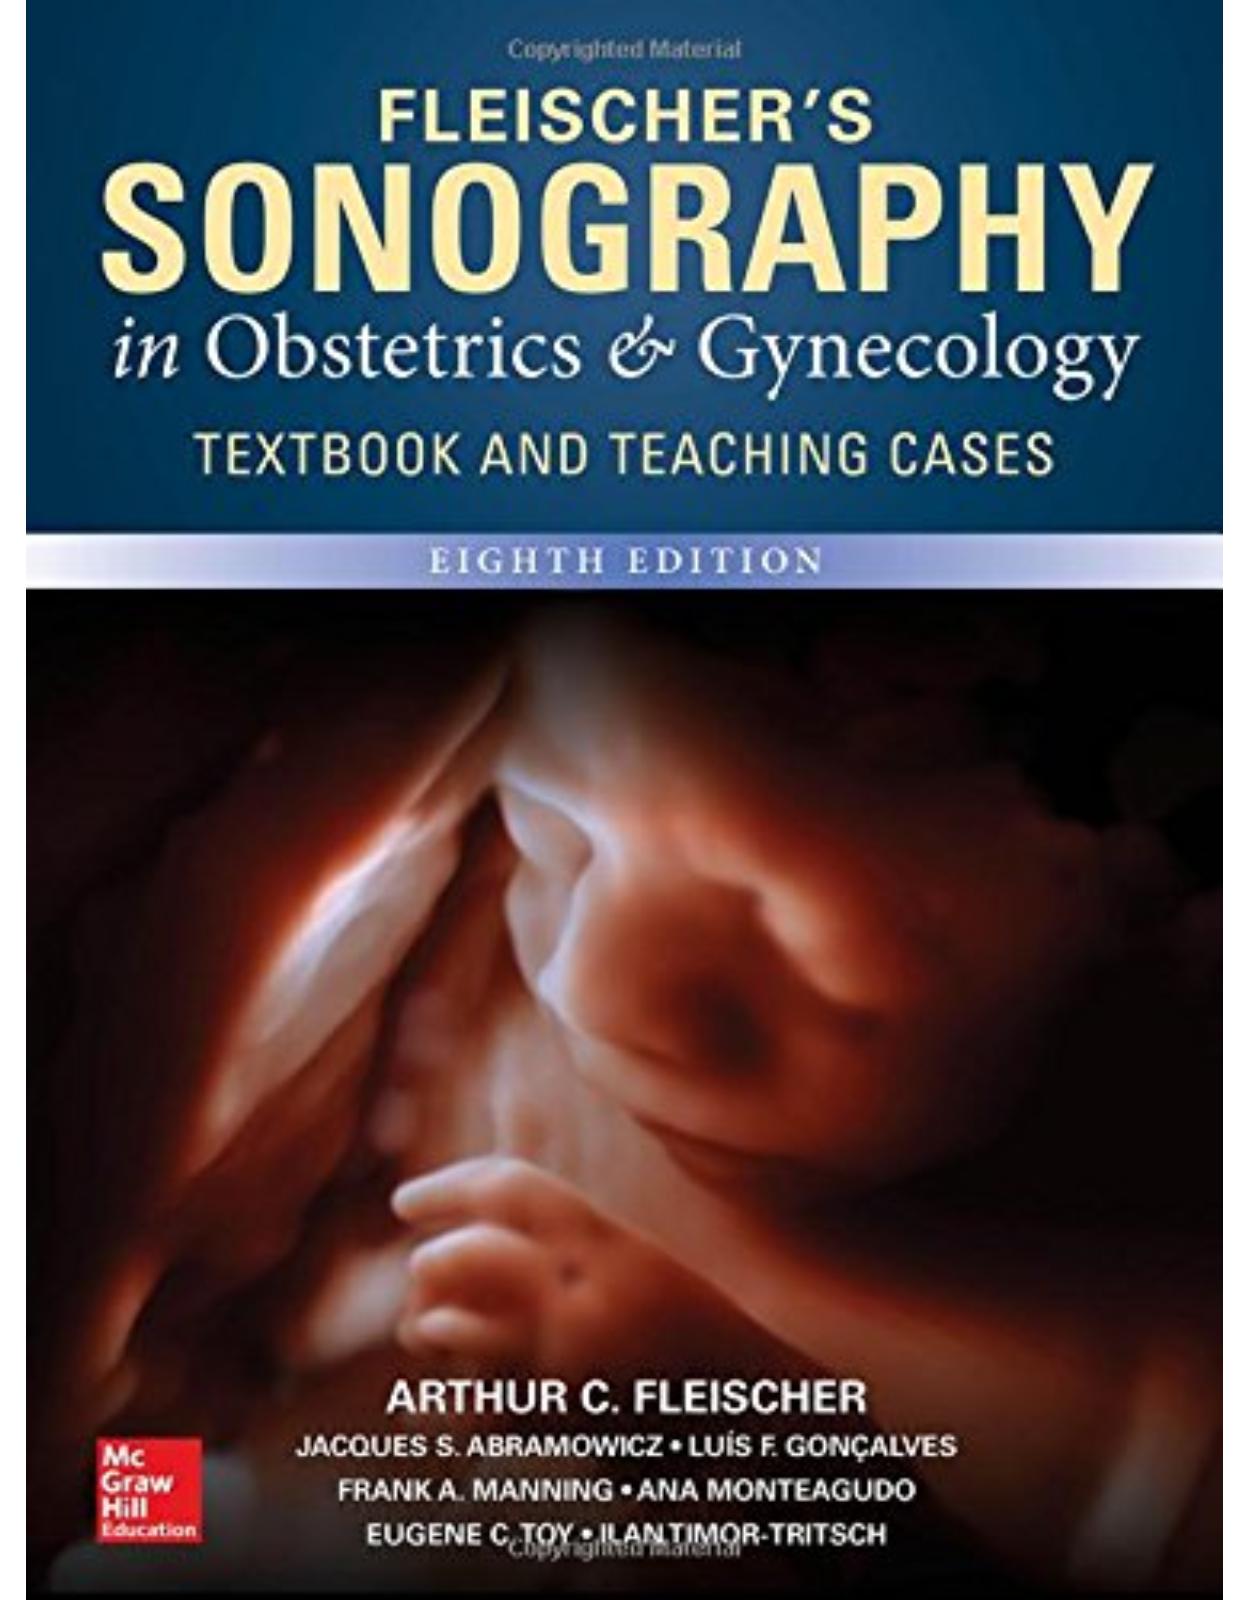 Fleischer’s Sonography in Obstetrics & Gynecology, Eighth Edition